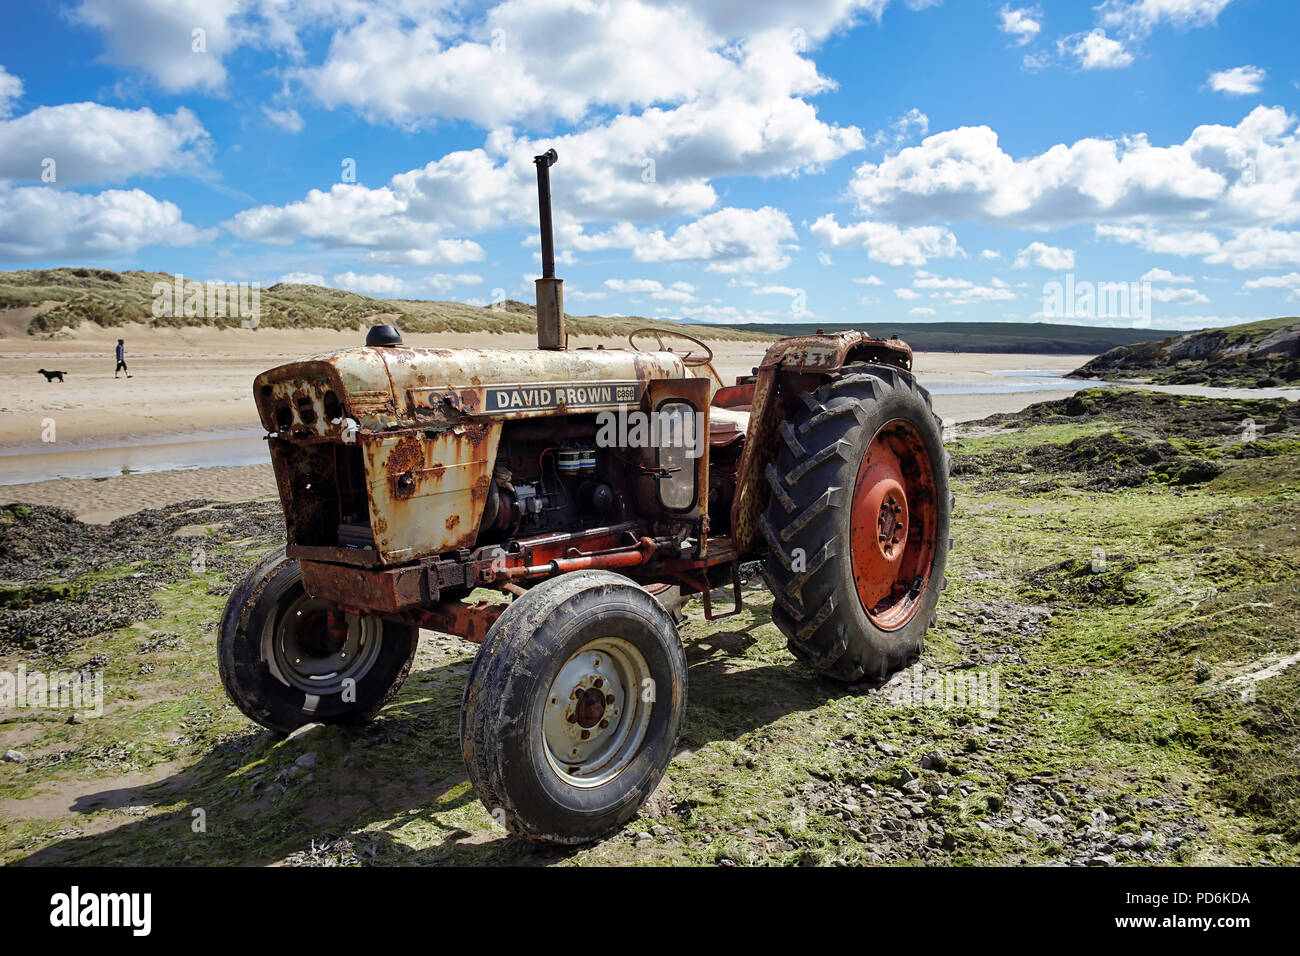 David braun traktor in wasser -Fotos und -Bildmaterial in hoher Auflösung –  Alamy